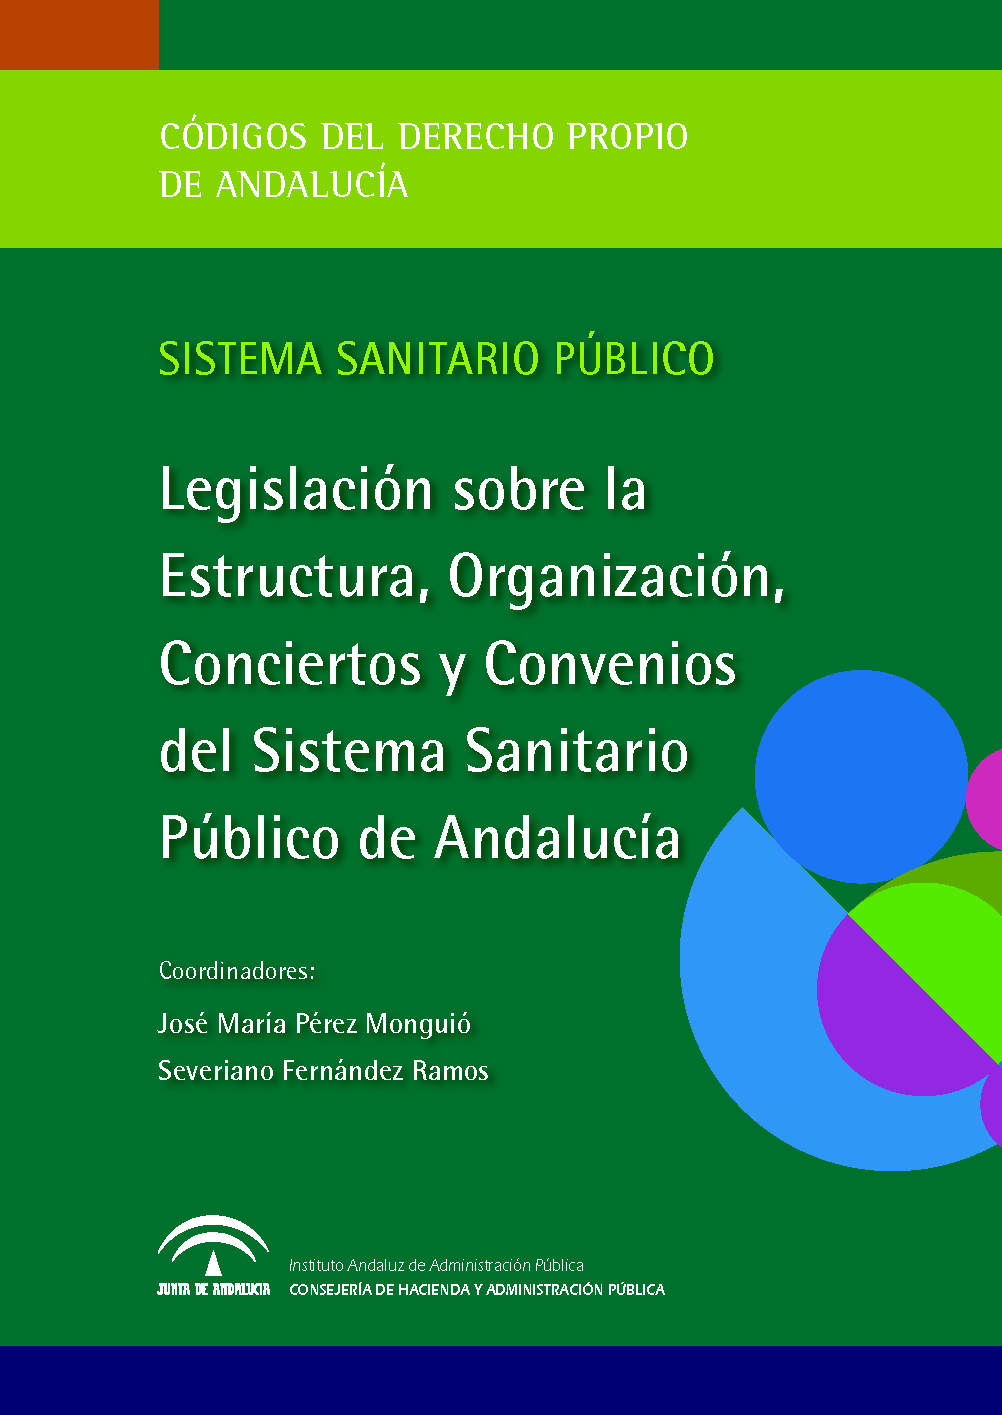 Portada de la publicación "Legislación sobre la Estructura, Organización, Conciertos y Convenios del Sistema Sanitario Público de Andalucía"